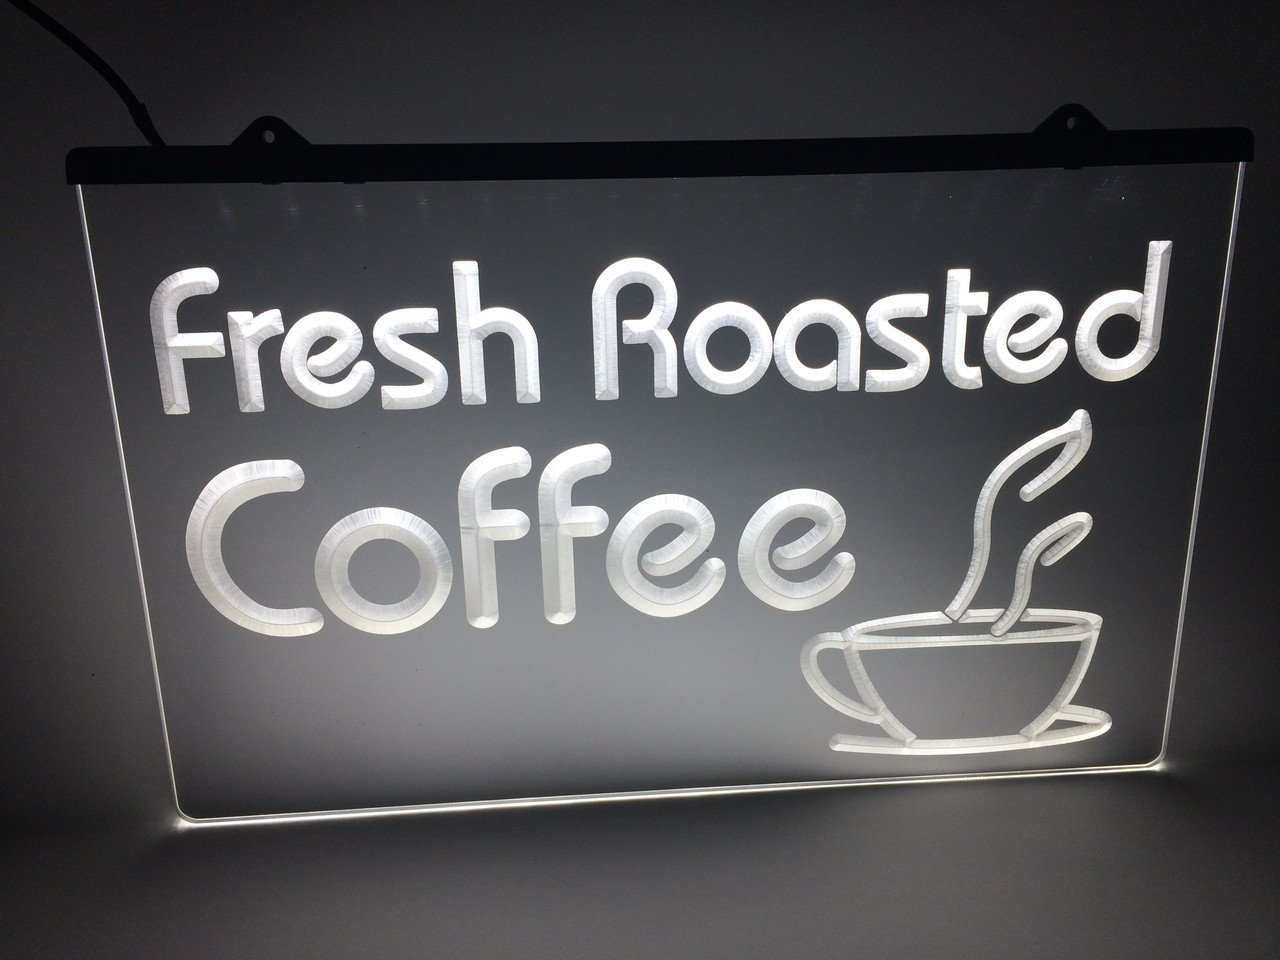 Світлодіодна LED табличка Свіжа обжарювання кави (Fresh Roasted Coffe) Біла